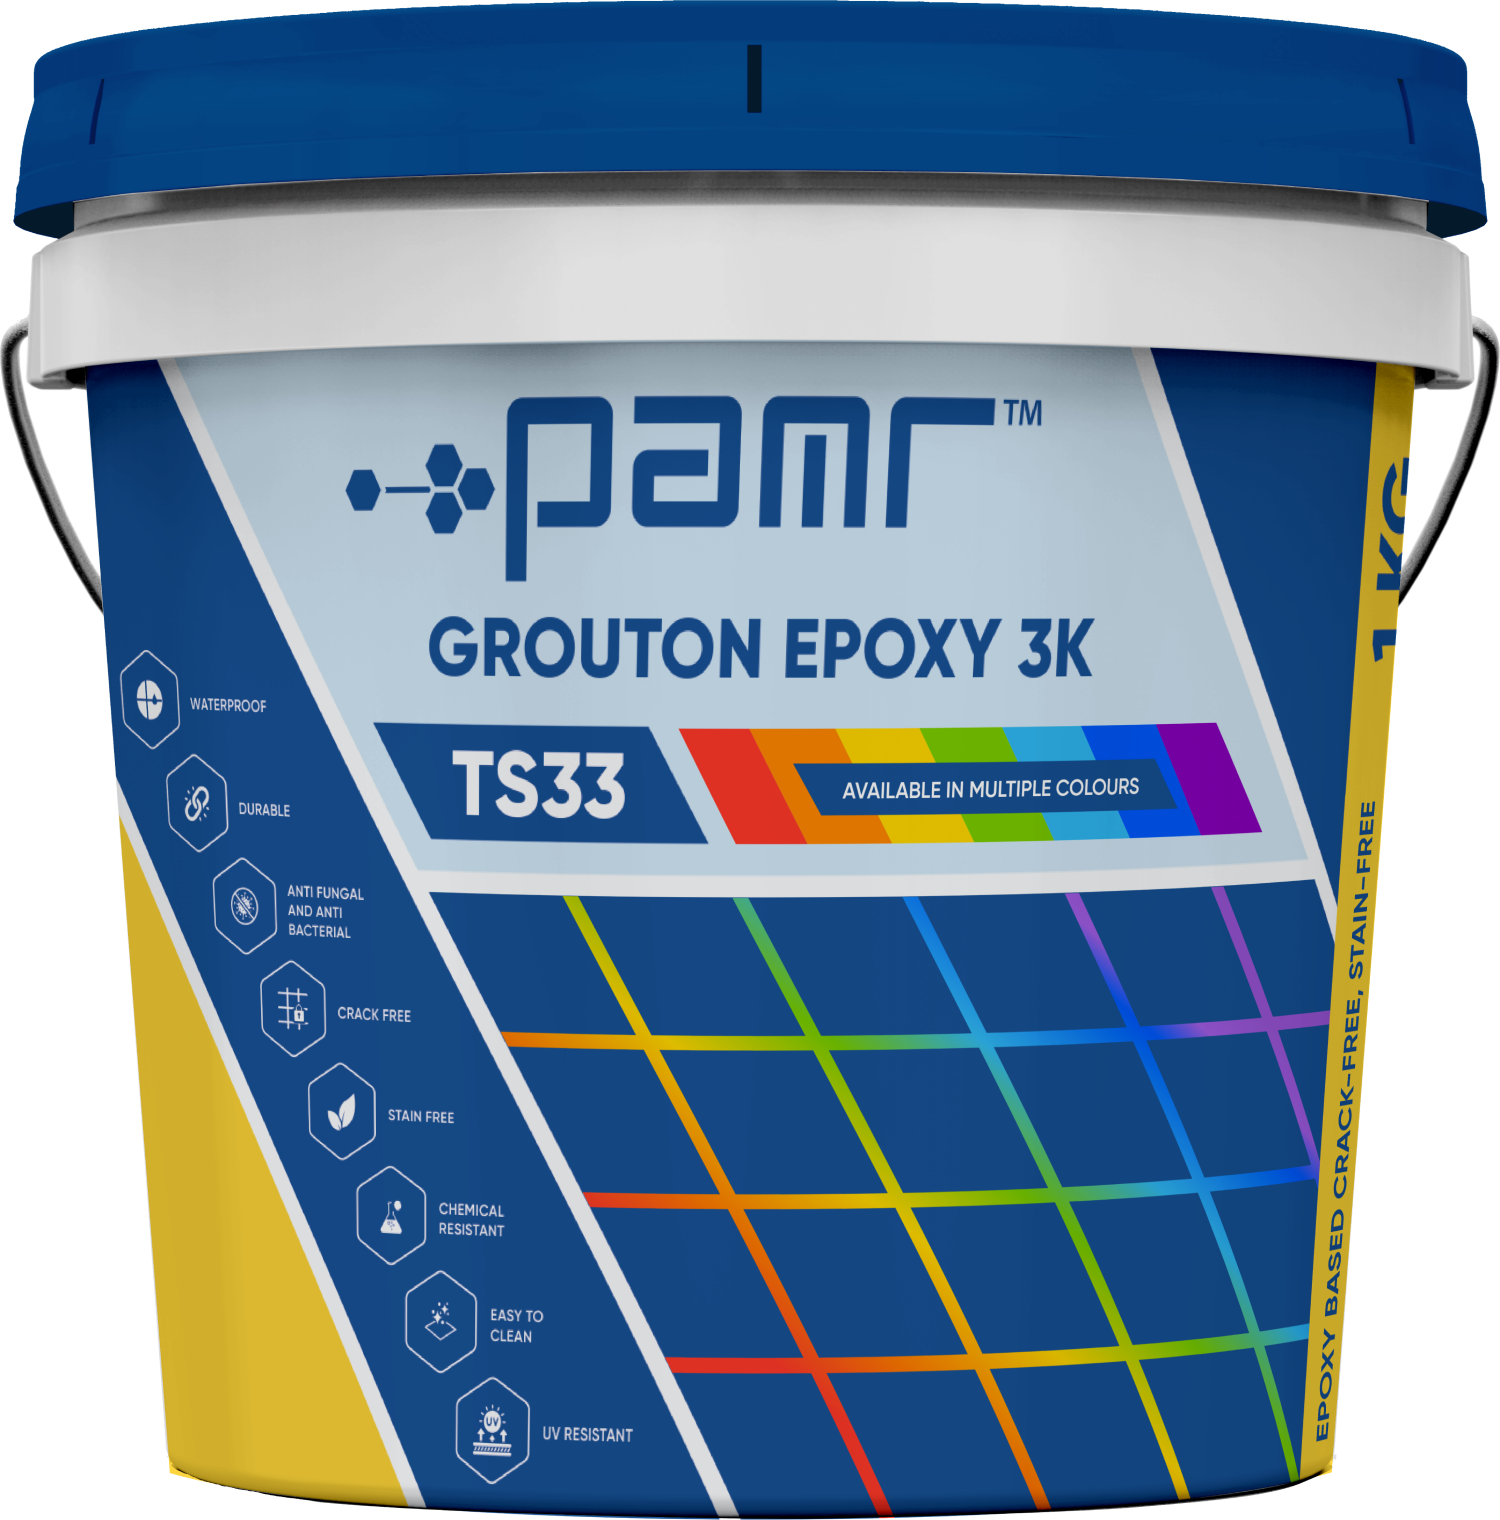 PAMR Grouton Epoxy 3k